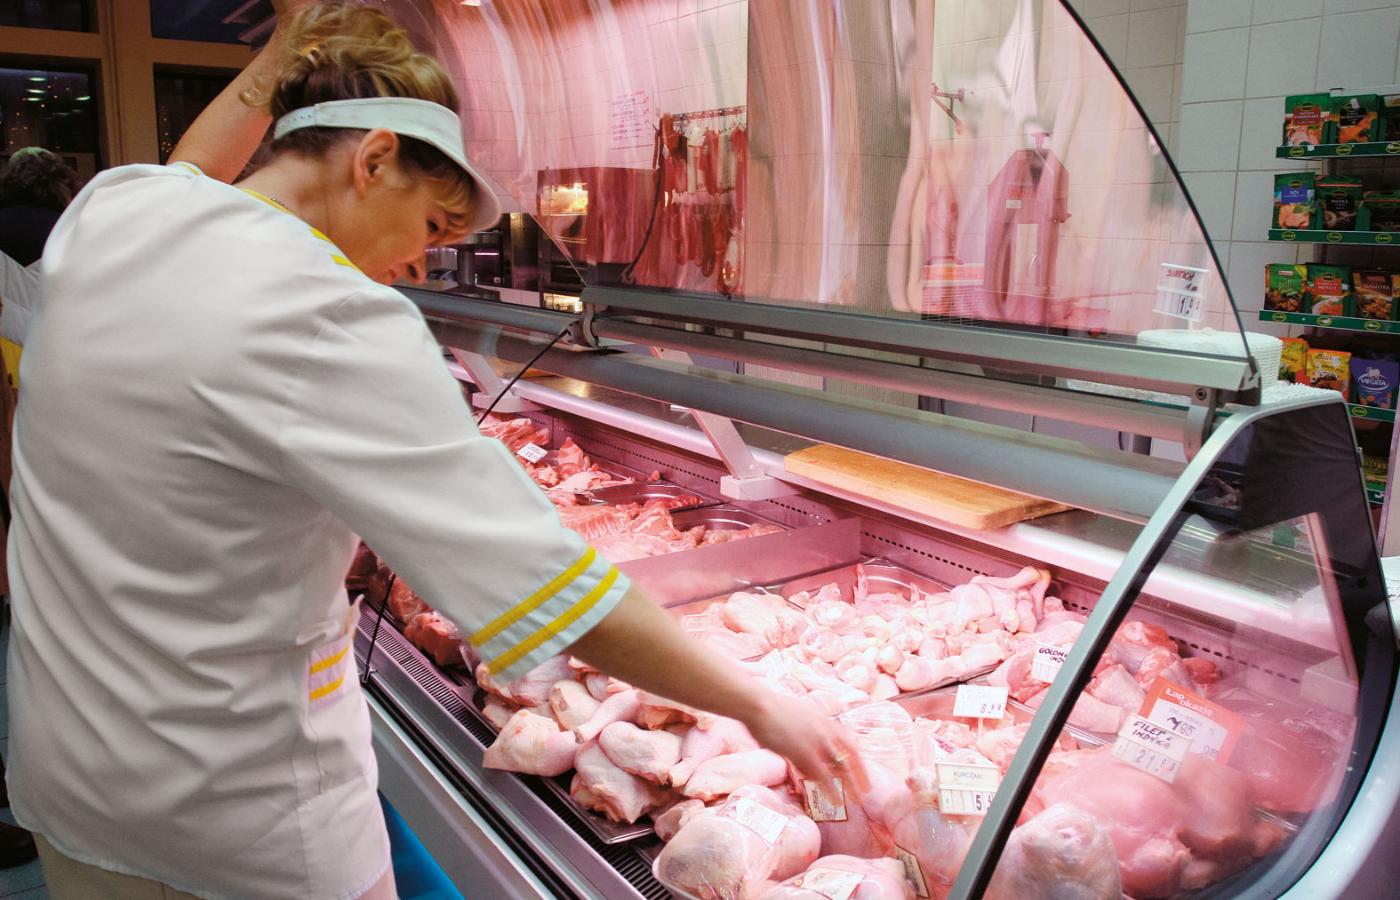 Selekcja genetyczna kurcząt oraz choroby mięśni mają wpływ na jakość mięsa w sklepach.